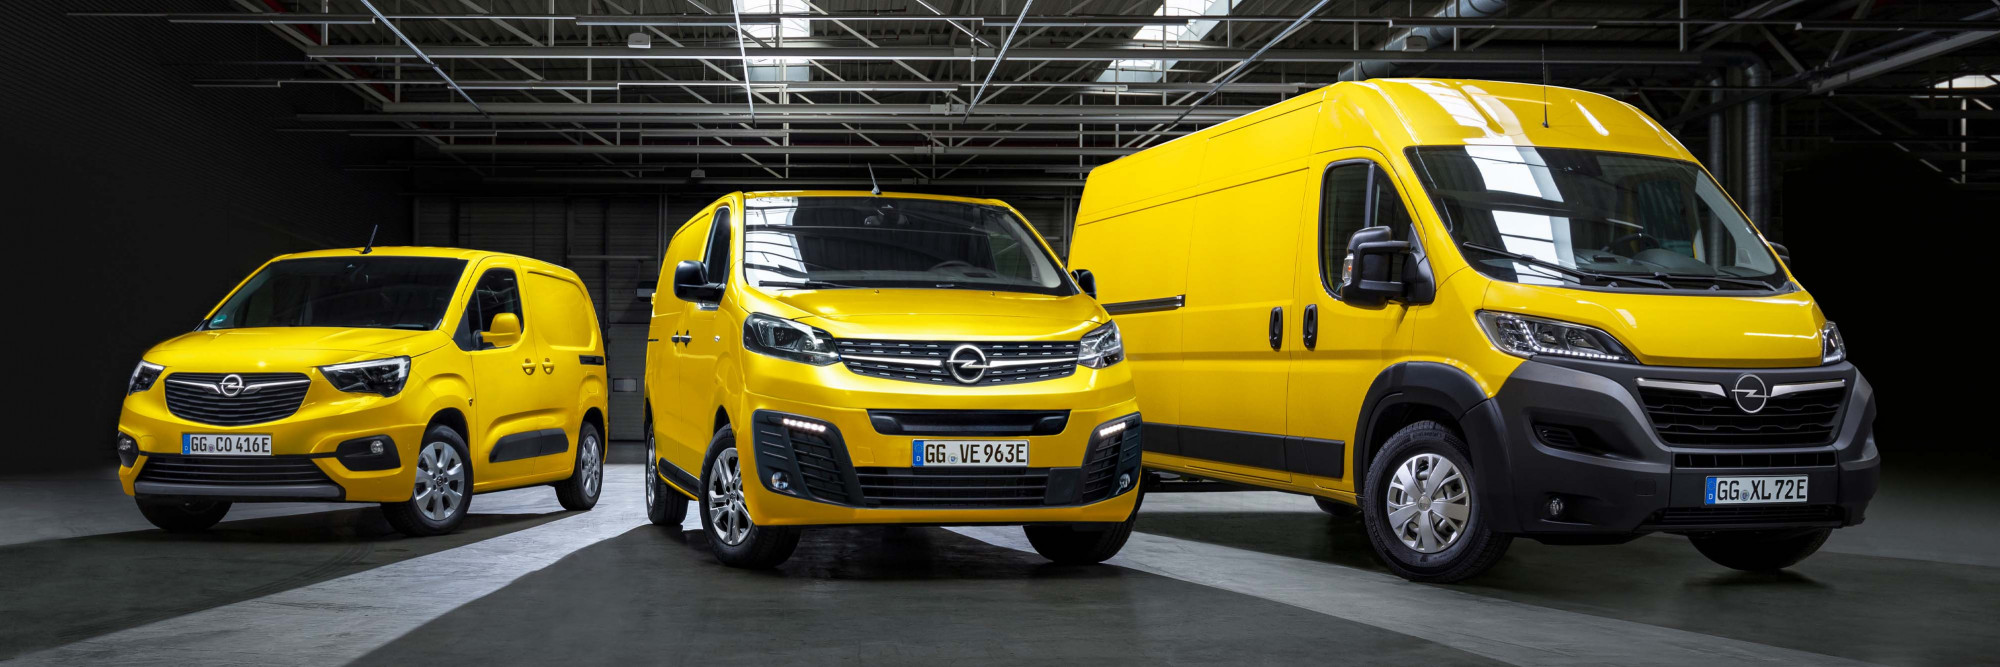 Opel bedrijfswagens 4000x1333